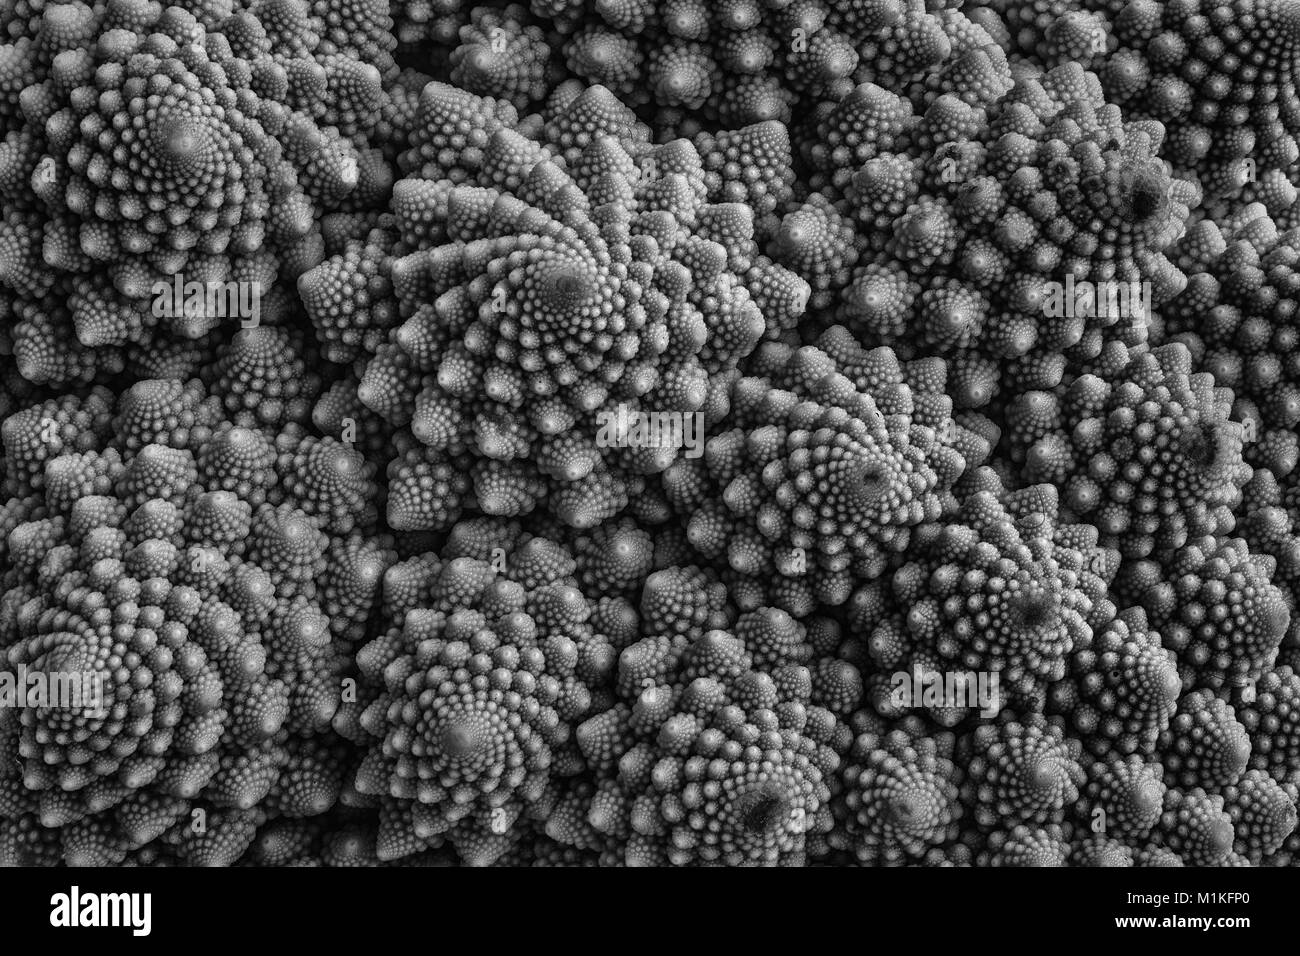 Dettaglio del cavolfiore Romanesco - un giardino vegetale la cui crescita patterns sembrano essere controllati da Mandelbrot geometria frattale Foto Stock